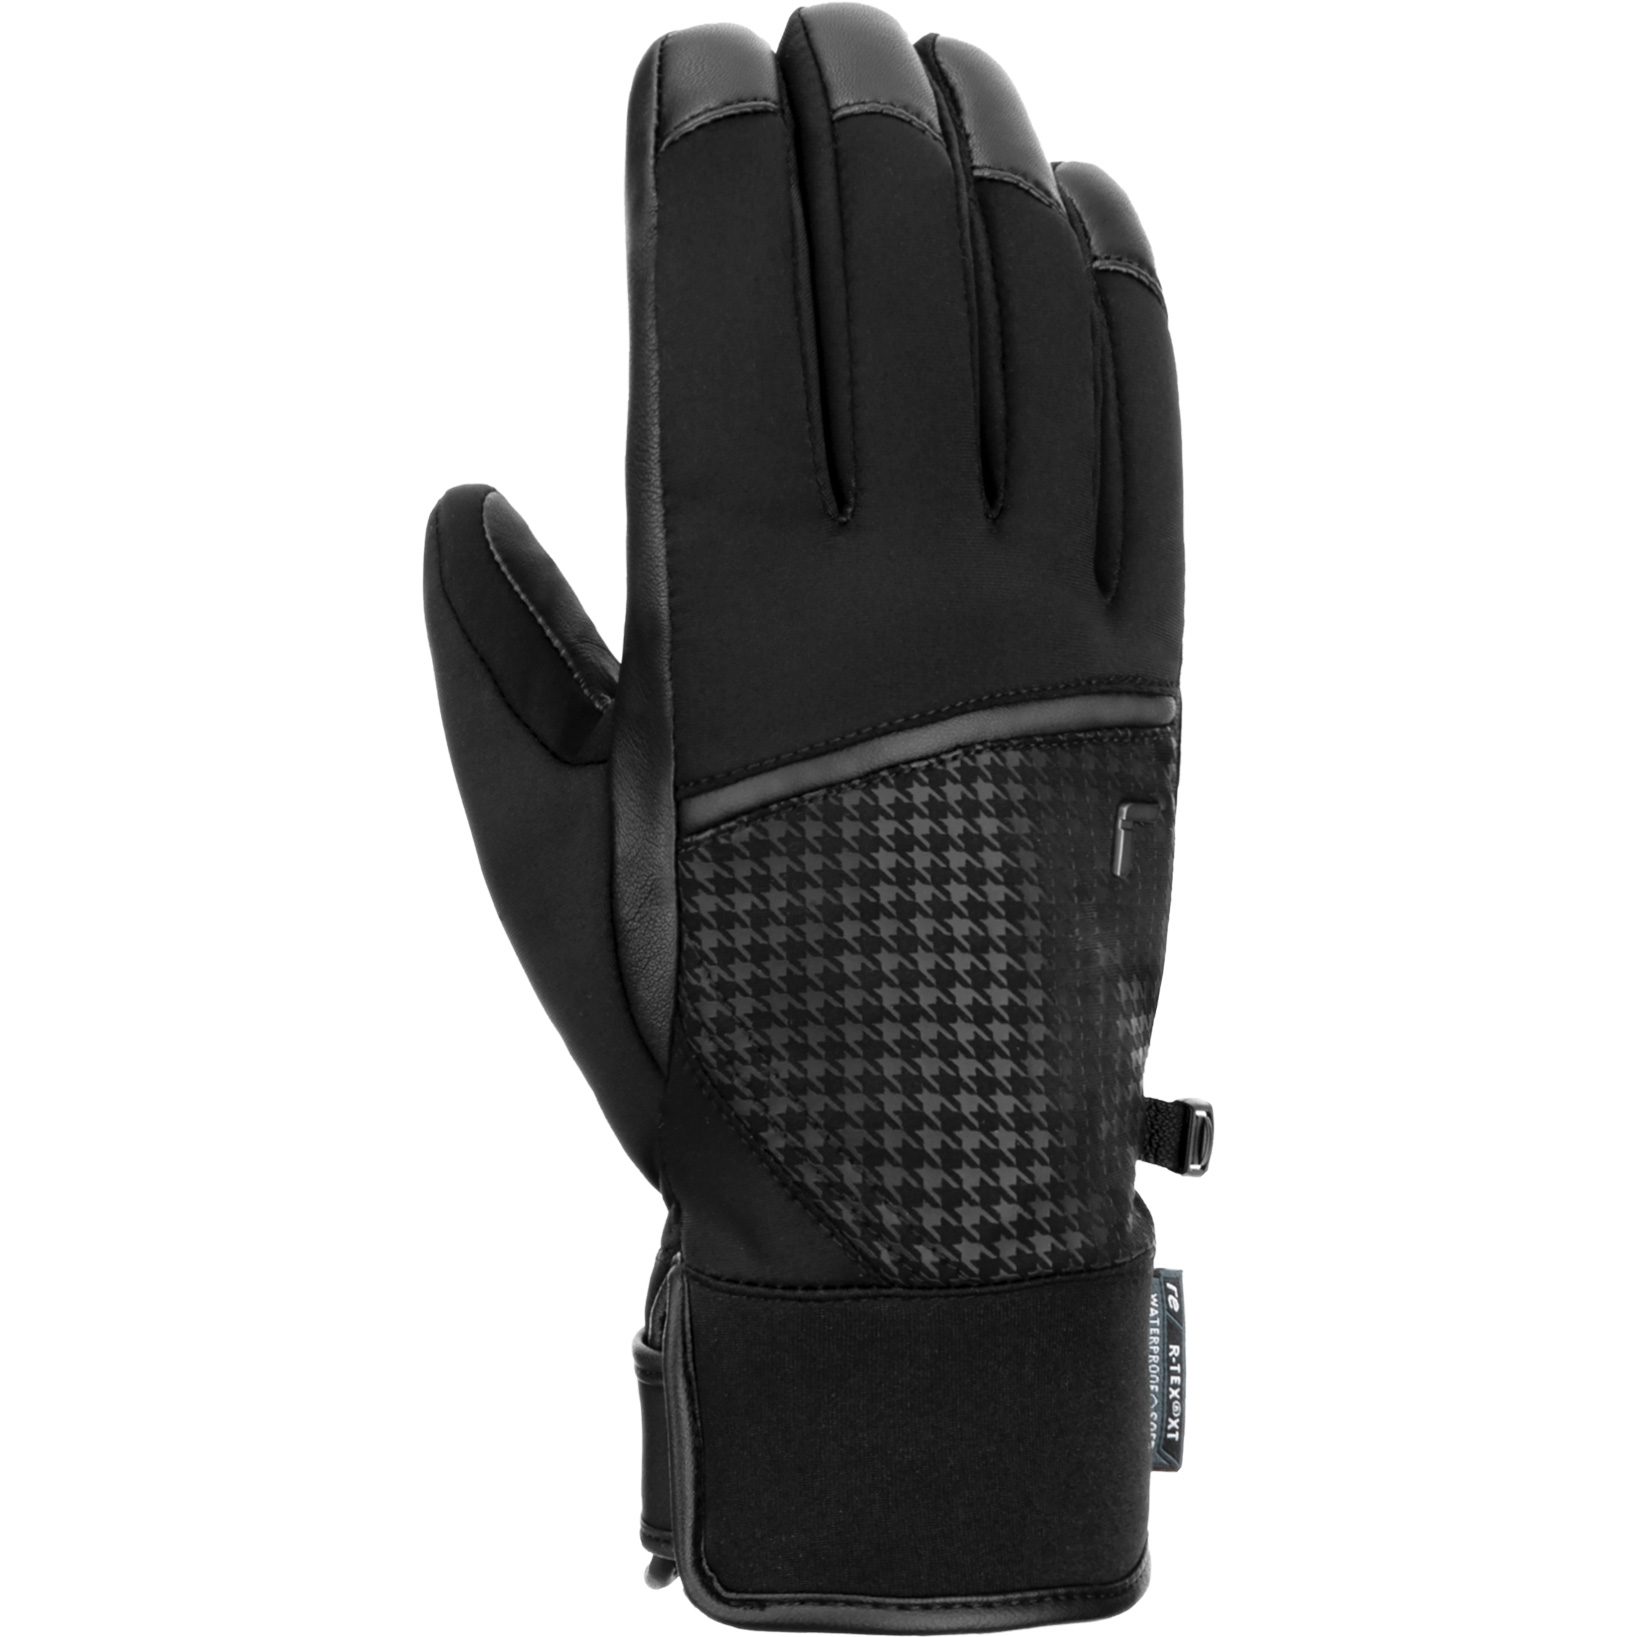 Reusch - Mara kaufen im R-Tex® Shop Sport XT Handschuhe Bittl schwarz